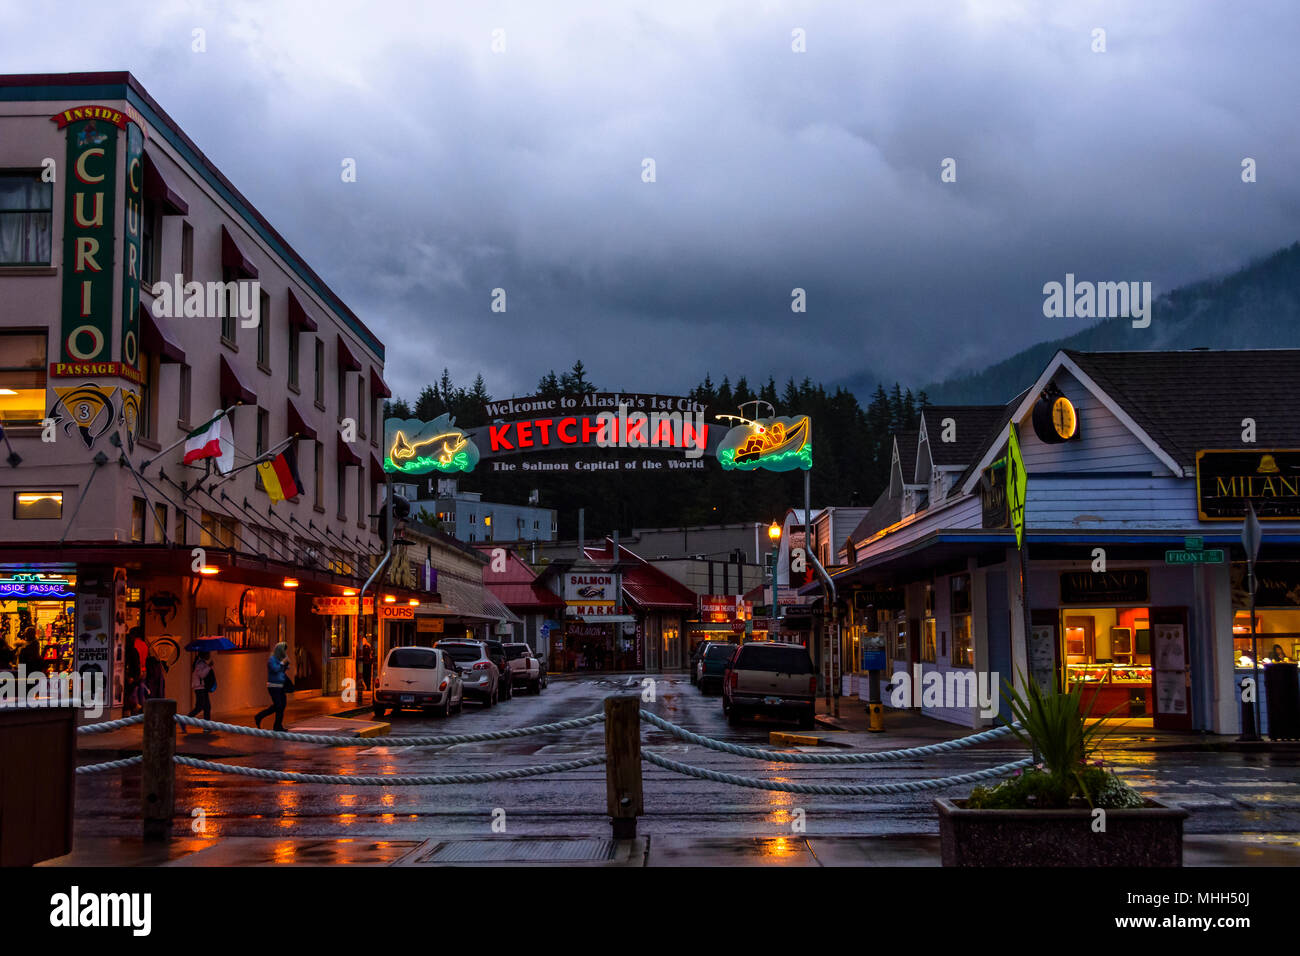 Ketchikan Stadt in Alaska. Alte hölzerne Häuser und Geschäfte in der Nacht. Stockfoto